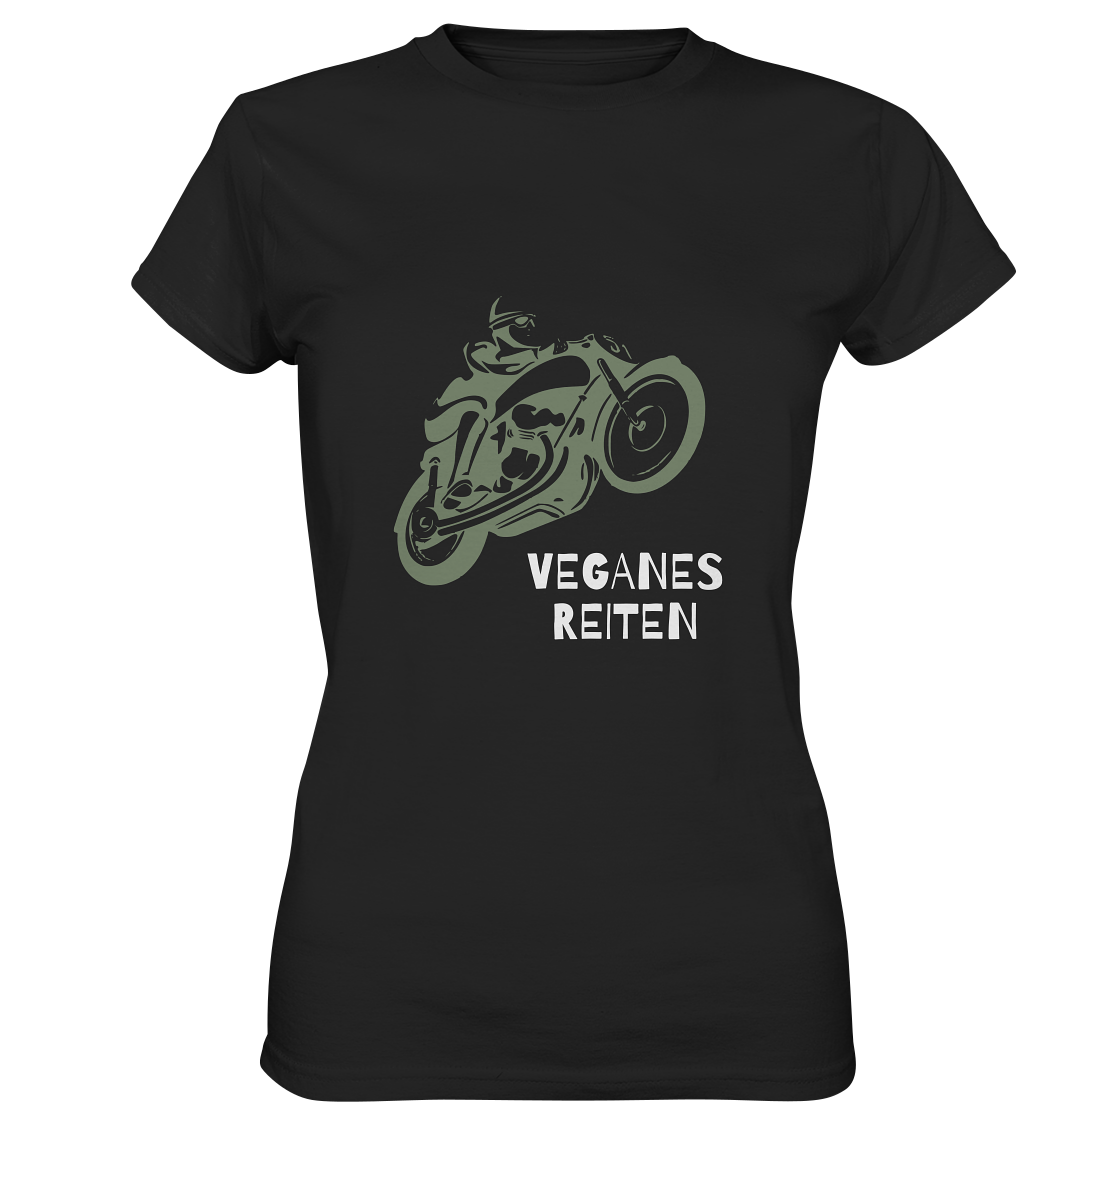 Damen T-Shirt, Rundhals, mit Motorrad-Aufdruck und Spruch "Veganes Reiten", schwarz